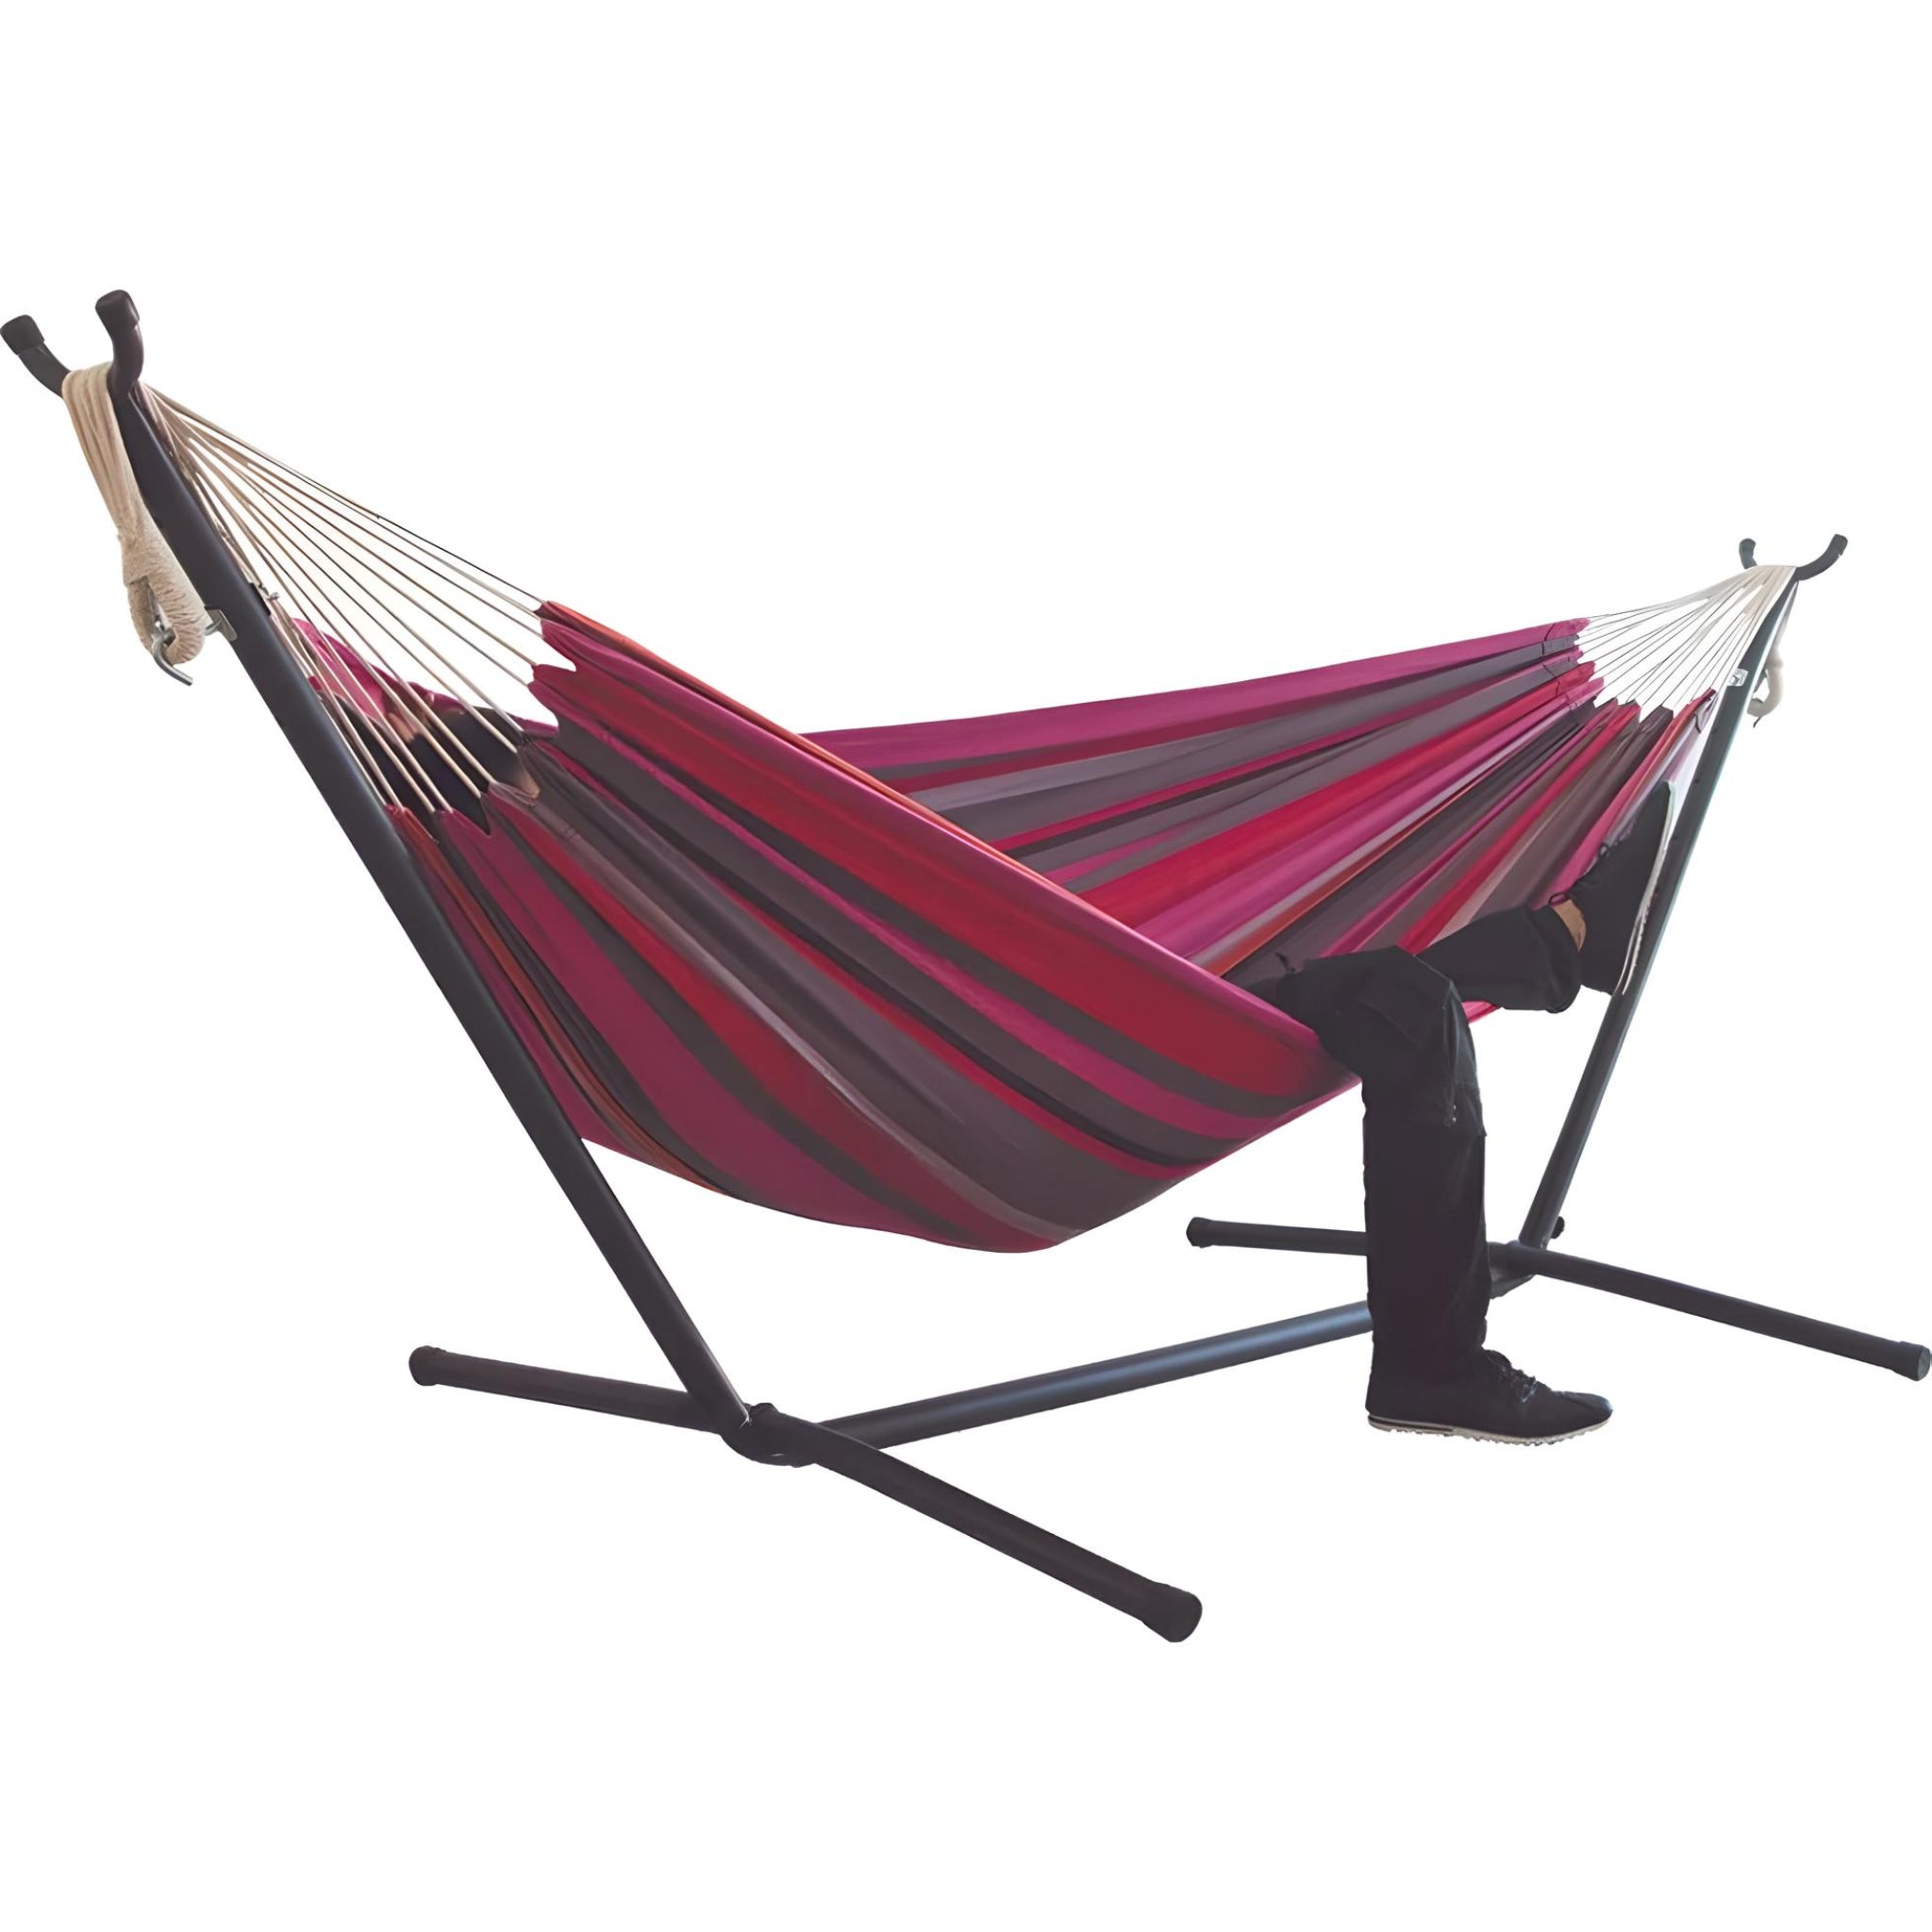 large-hammock-bed-red-black-color